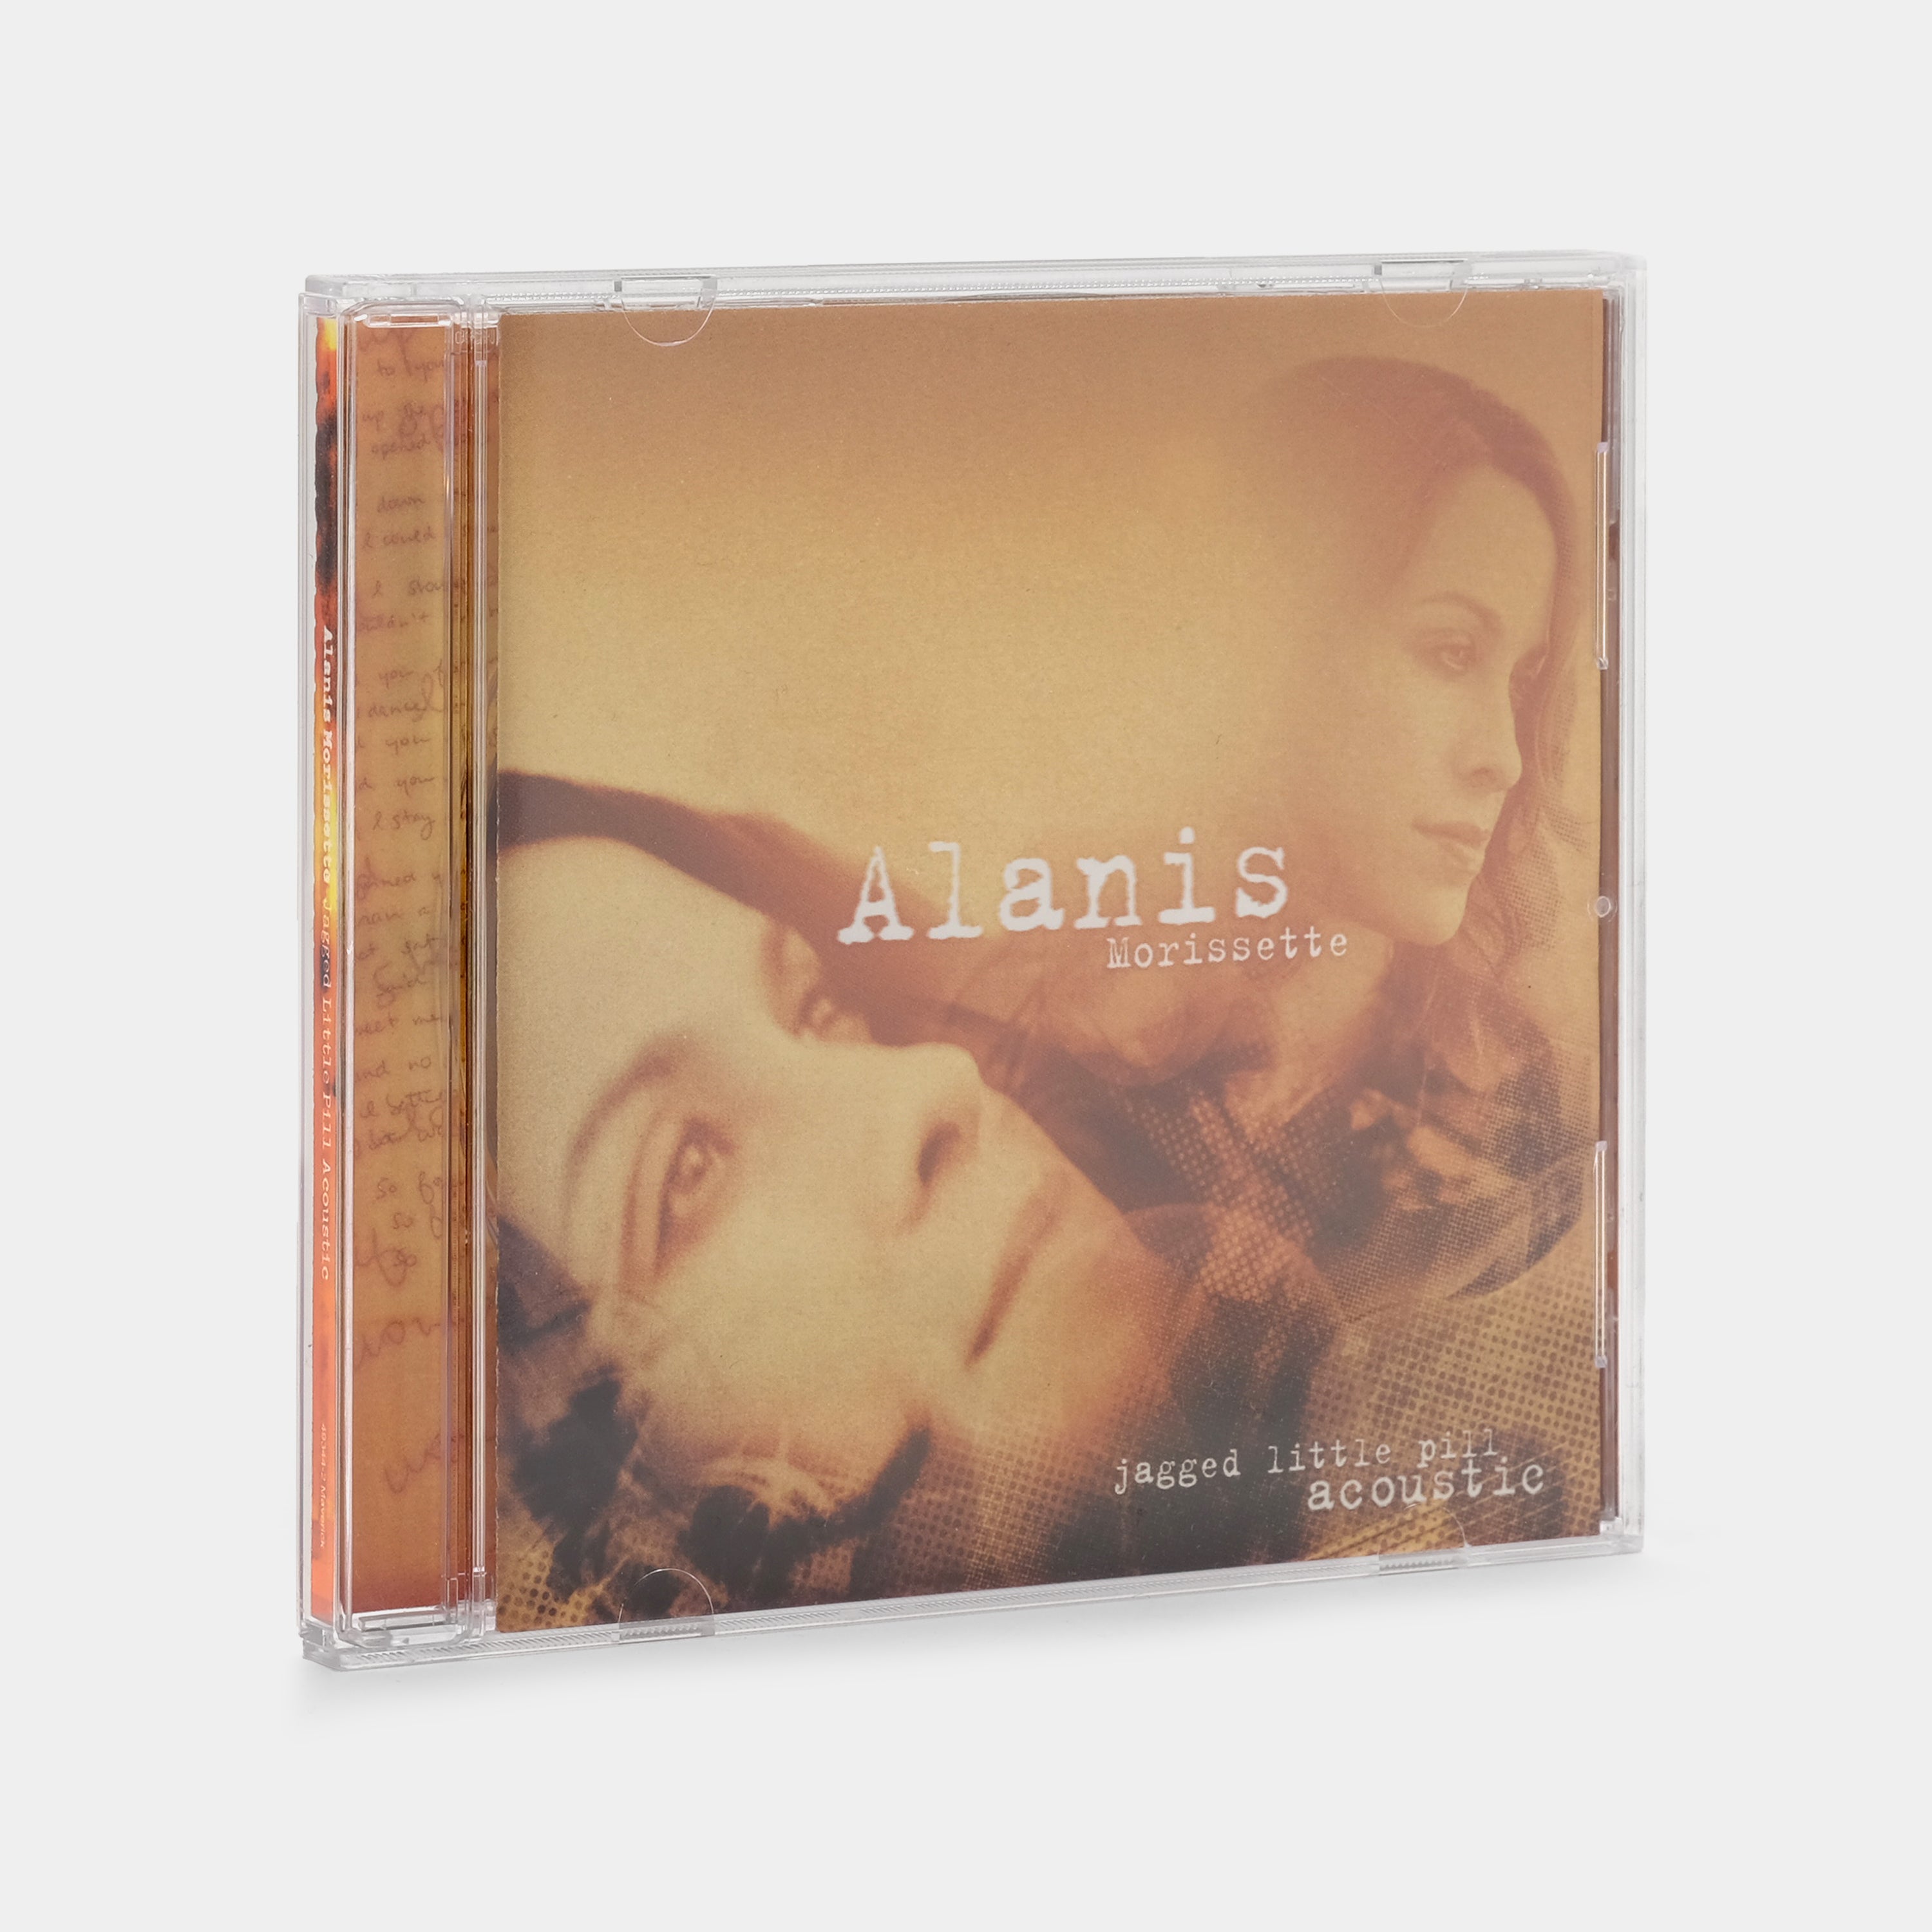 Alanis Morissette - Jagged Little Pill Acoustic CD